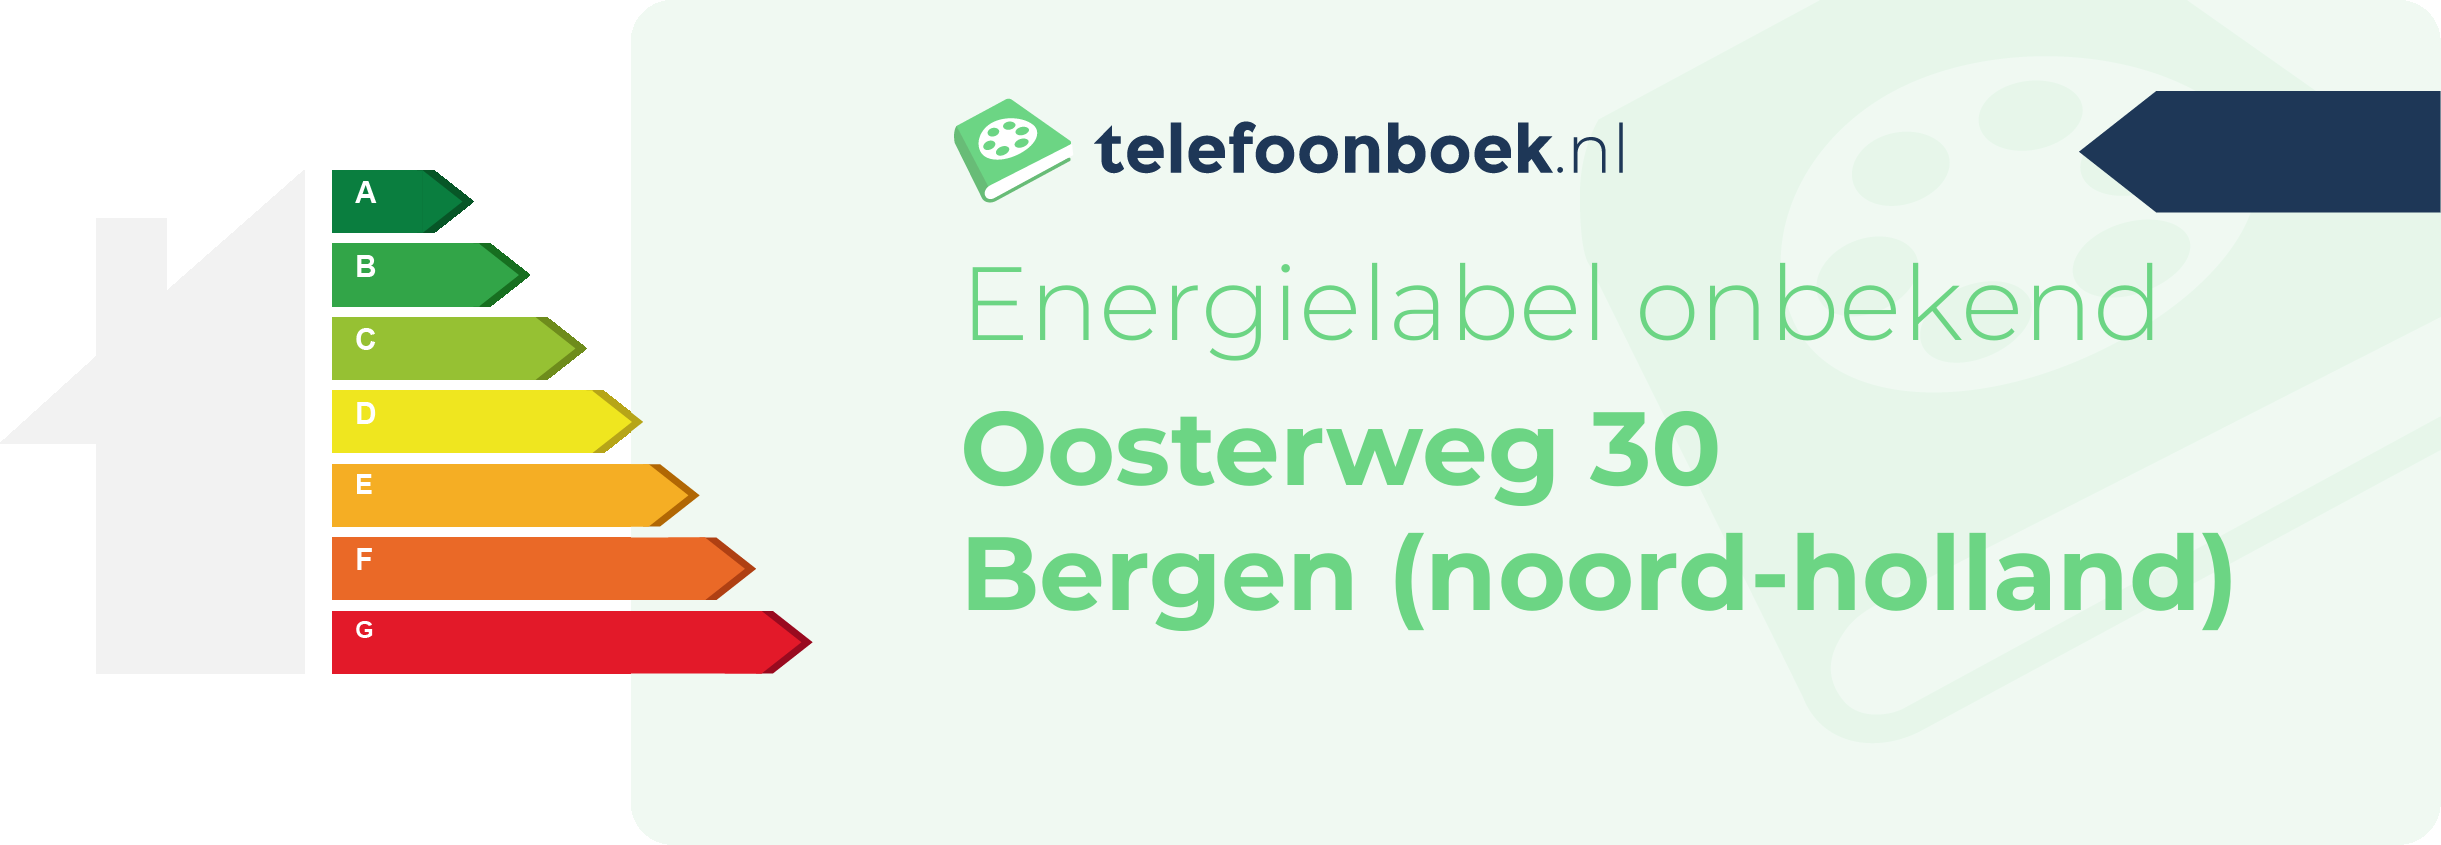 Energielabel Oosterweg 30 Bergen (Noord-Holland)